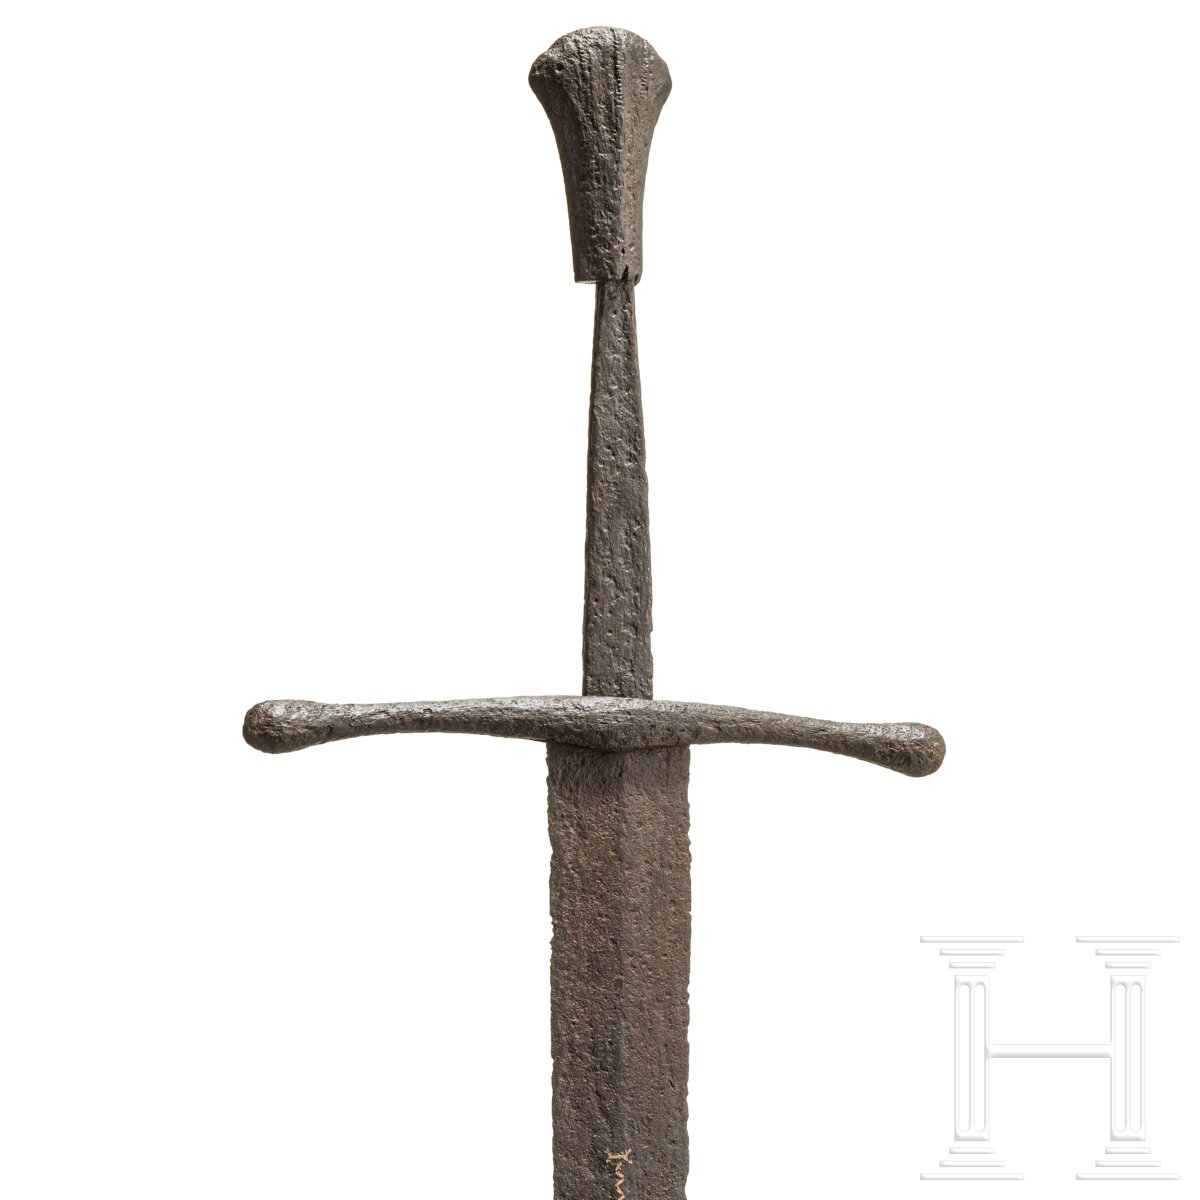 Ritterliches Schwert zu anderthalb Hand, Frankreich, um 1440/50 - Image 8 of 9